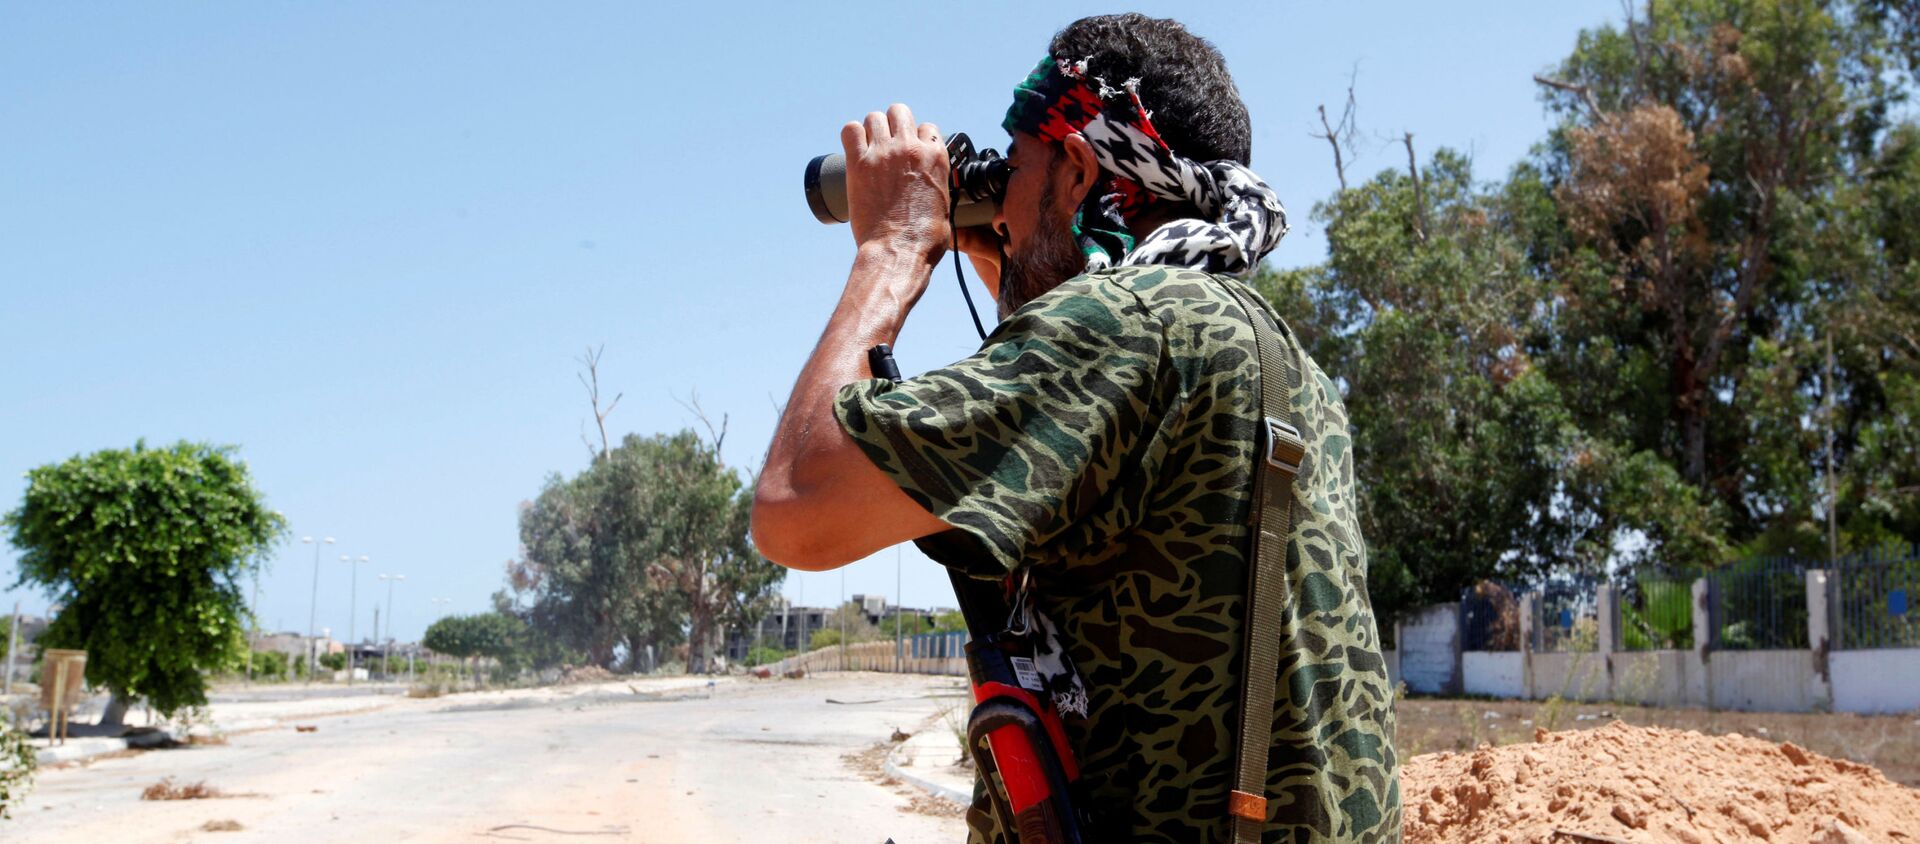 ليبيا - أفراد القوات الليبية خلال تواجدهم في مواقع المواجهة ضد تنظيم داعش في مدينة سرت، 15 أغسطس/ آب 2016 - سبوتنيك عربي, 1920, 12.02.2017